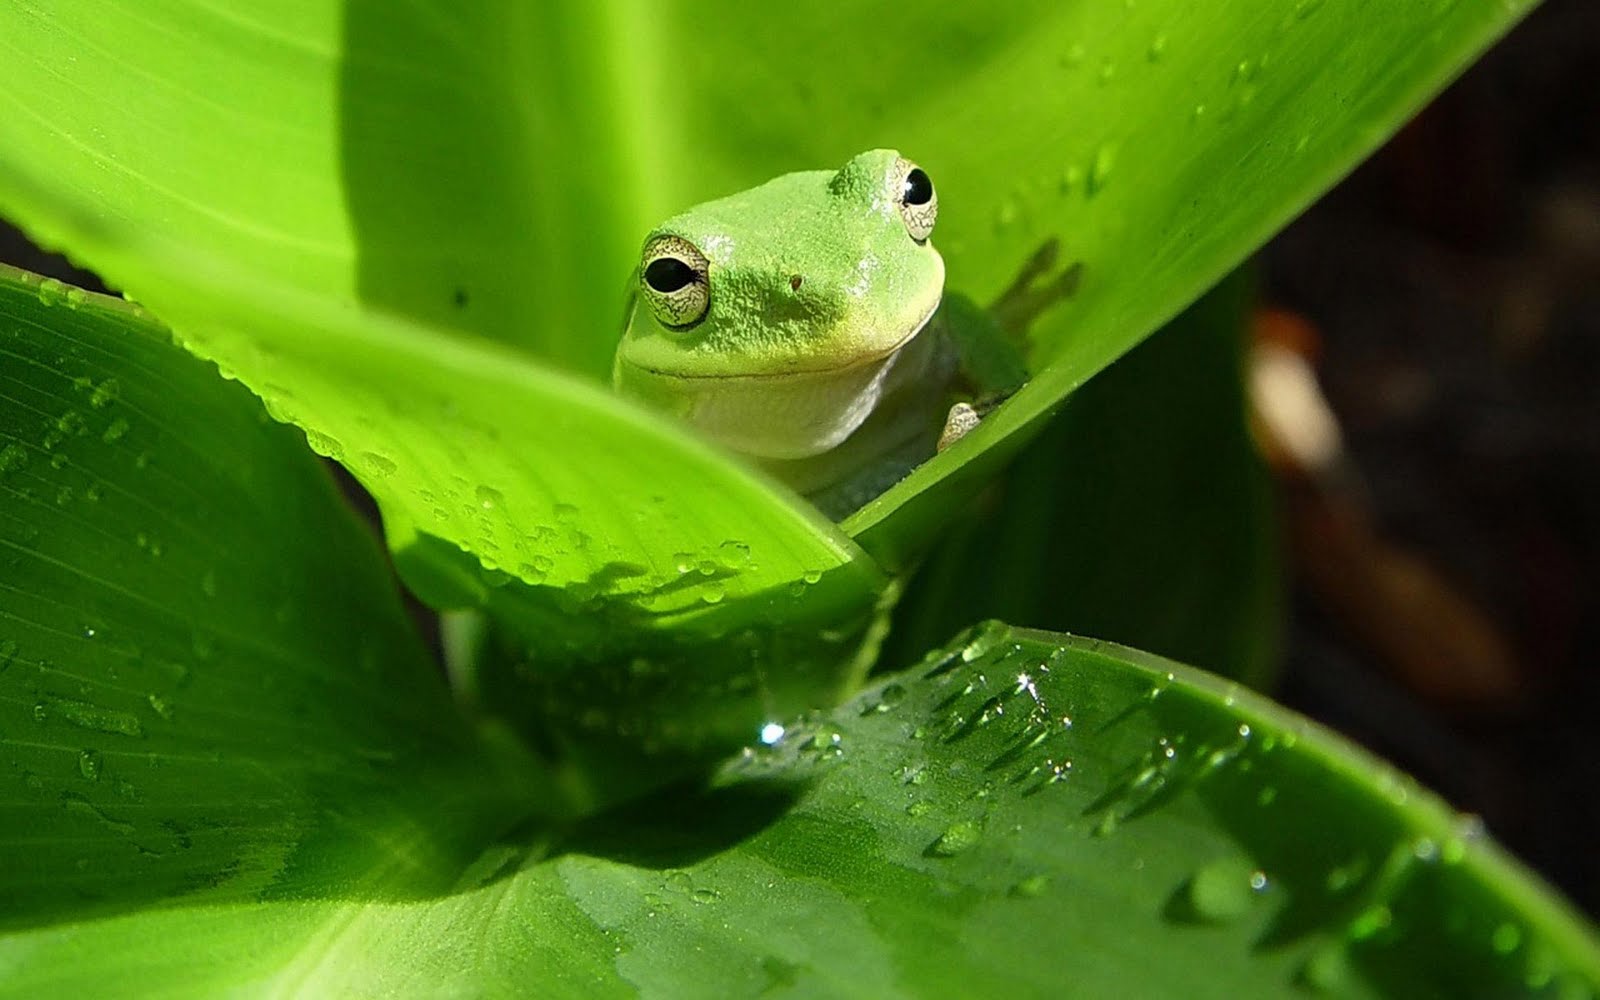 fond d'écran mignon grenouille,grenouille,feuille,vert,rainette,vraie grenouille